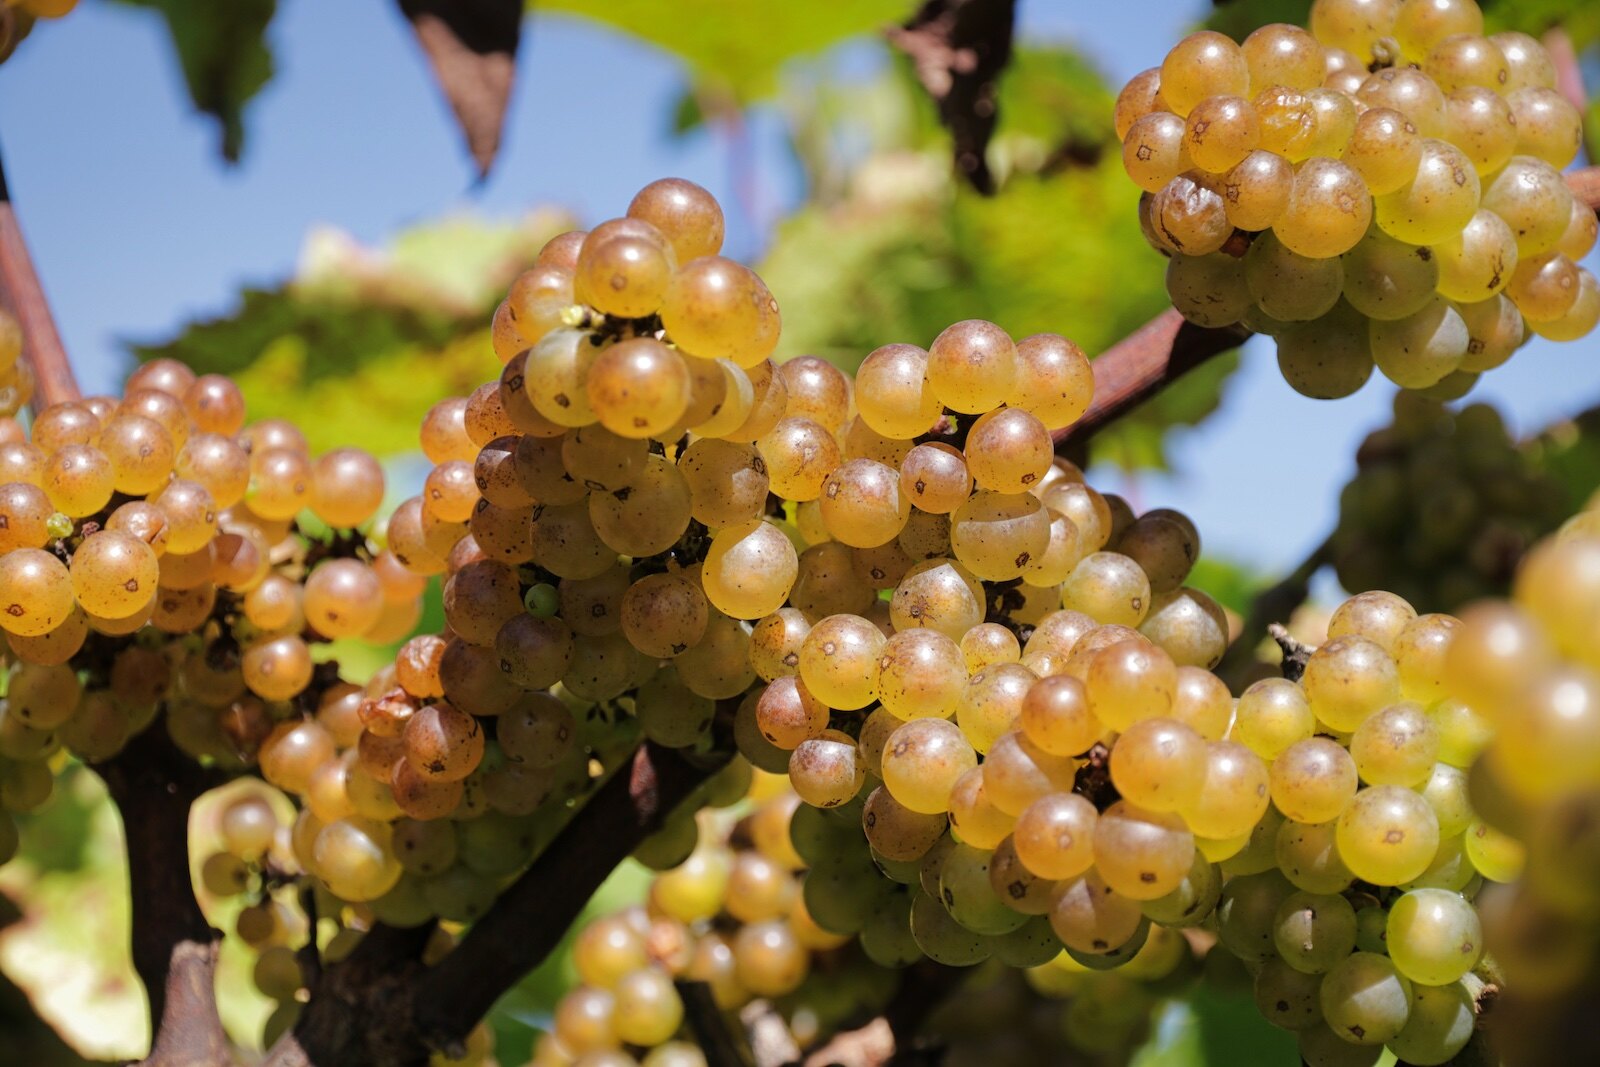 Grape bunches in the vineyards of Wijngaard Dassemus